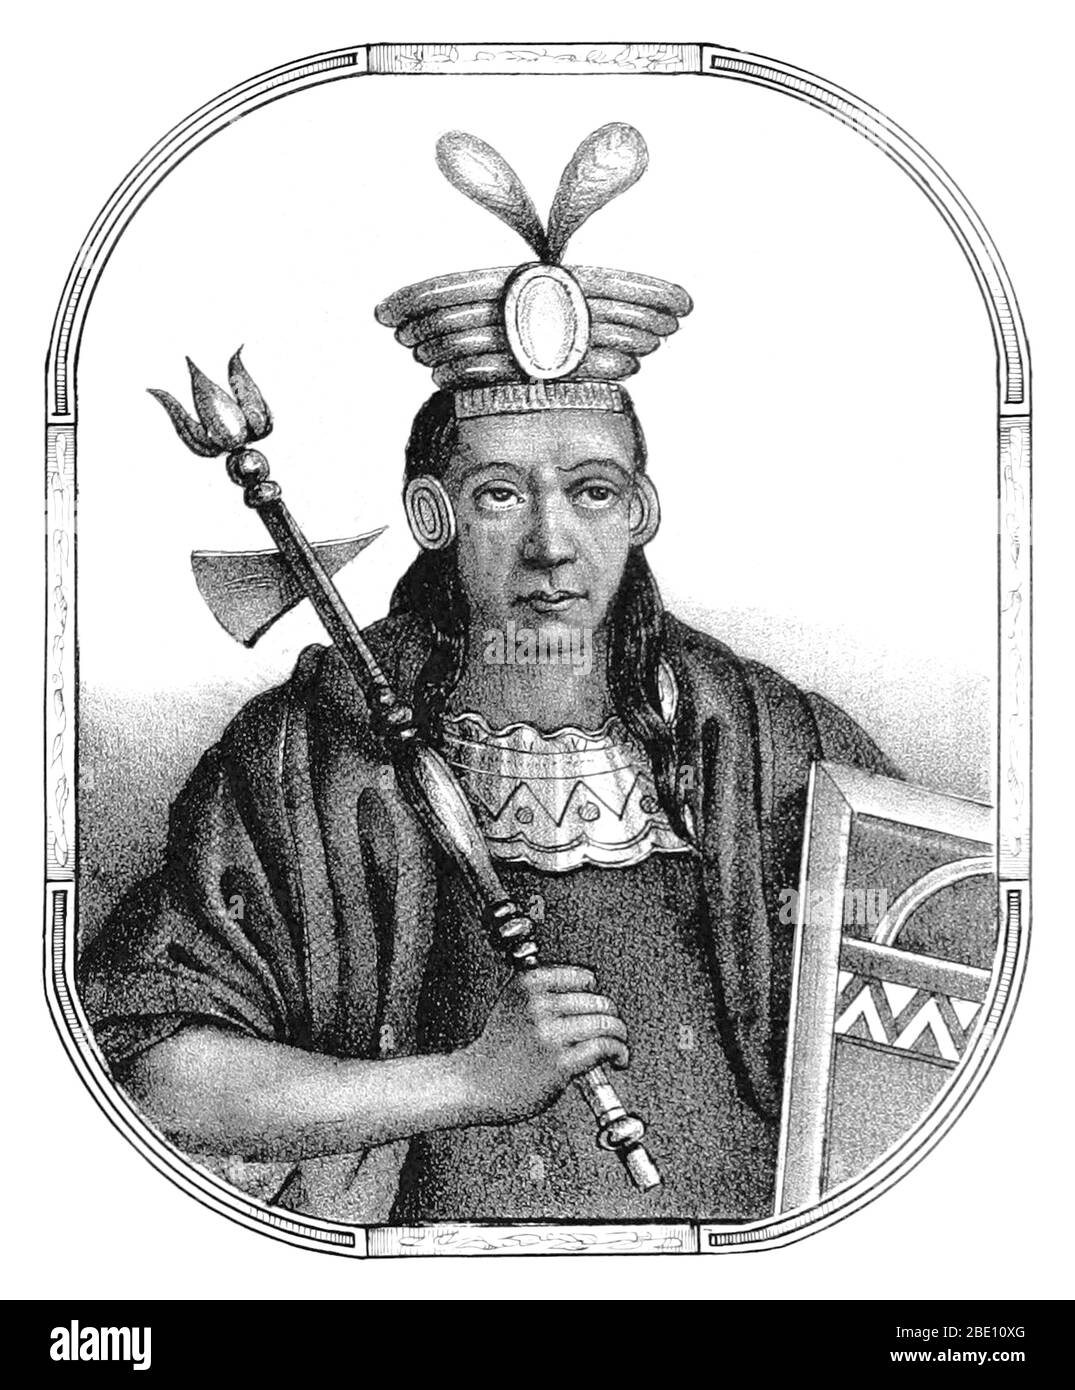 Mayta Cápac (Mayta Qhapaq Inka) fue el cuarto Sapa Inca del Reino de Cuzco (a partir de 1290) y miembro de la dinastía Hurin. Los cronistas lo describen como un gran guerrero que conquistó territorios tan lejos como el Lago Titicaca, Arequipa y Potosí. Mientras que en realidad, su reino estaba todavía limitado al valle del Cuzco. En 1134, Mayta Cápac puso las regiones de Arequipa y Moquegua bajo el control del imperio inca. Su gran hazaña militar fue la subyugación de las tribus Alcabisas y Culunchimas. Imagen tomada de la página 59 de 'Recuerdos de la Monarquía Peruana, ó bosquejo de la historia Foto de stock